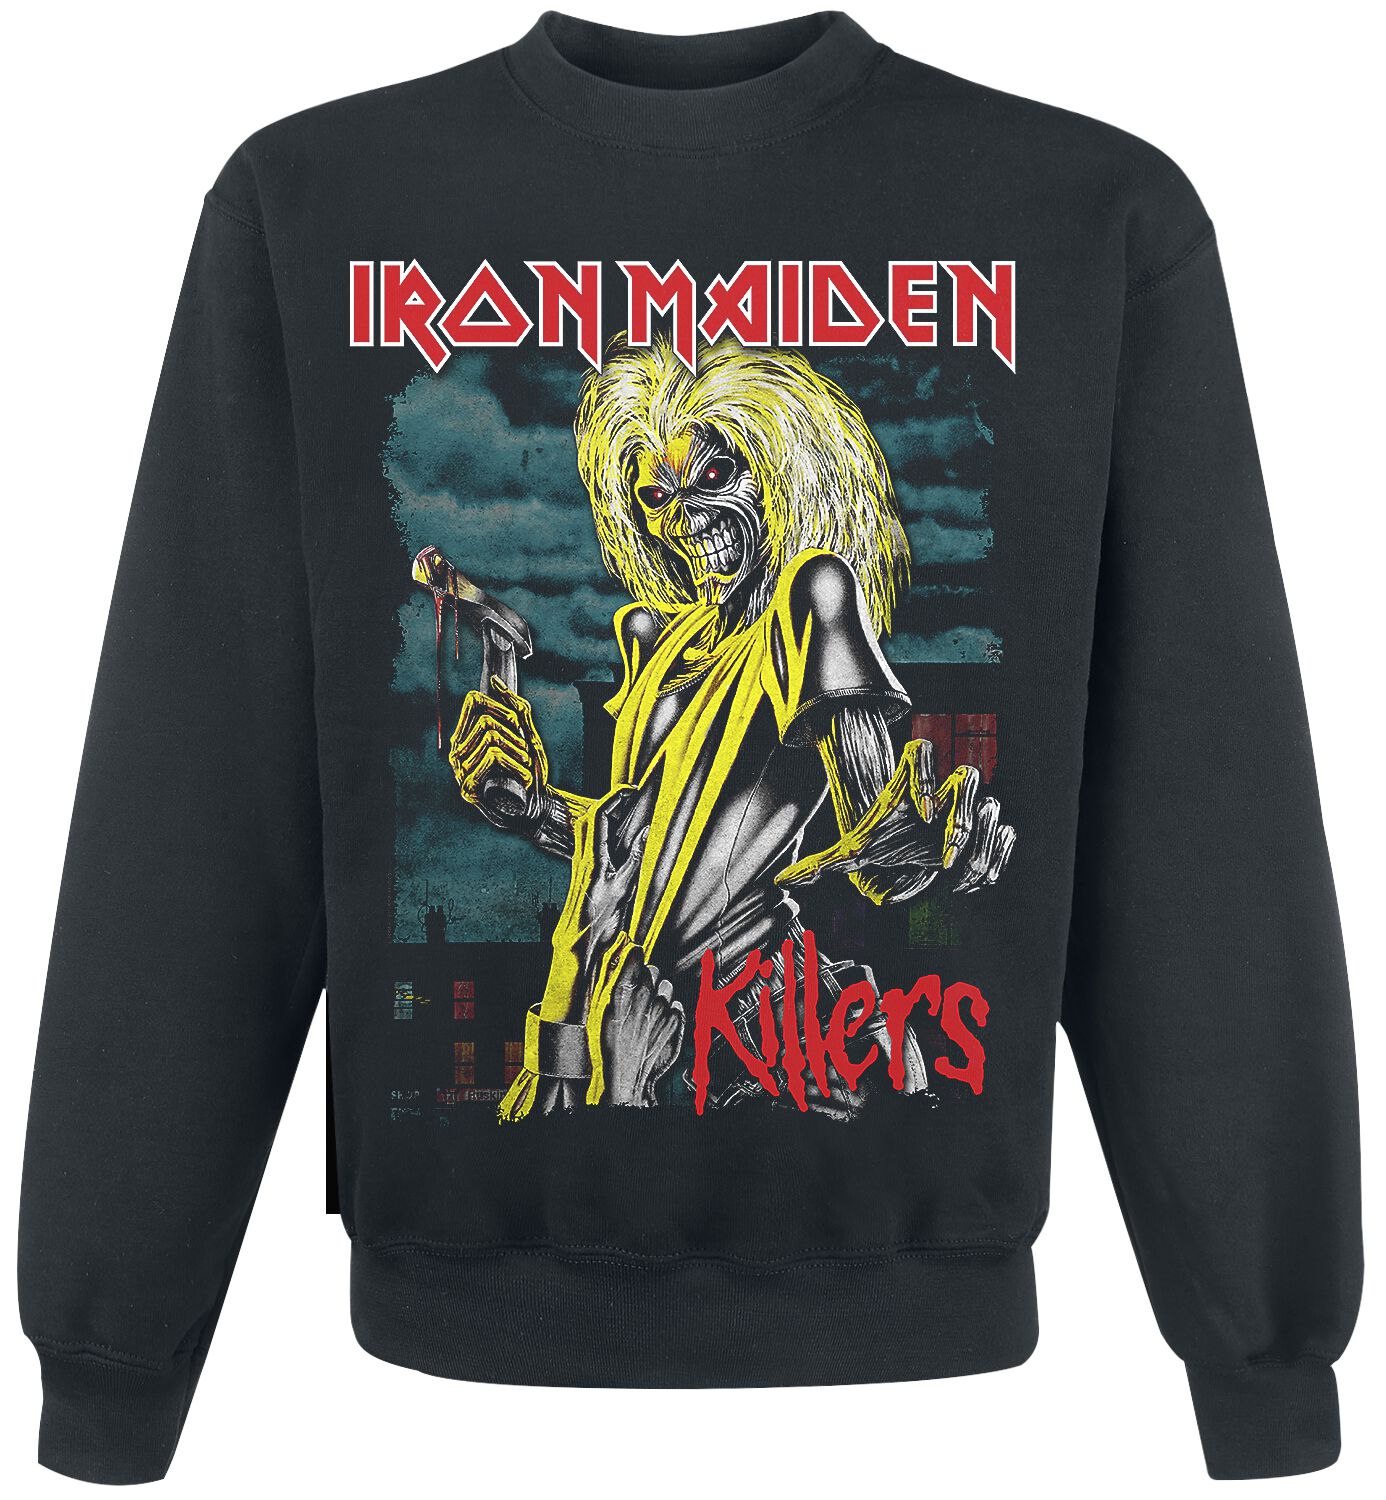 Iron Maiden Sweatshirt - Killers Green Clouds - S bis XXL - für Männer - Größe S - schwarz  - Lizenziertes Merchandise!